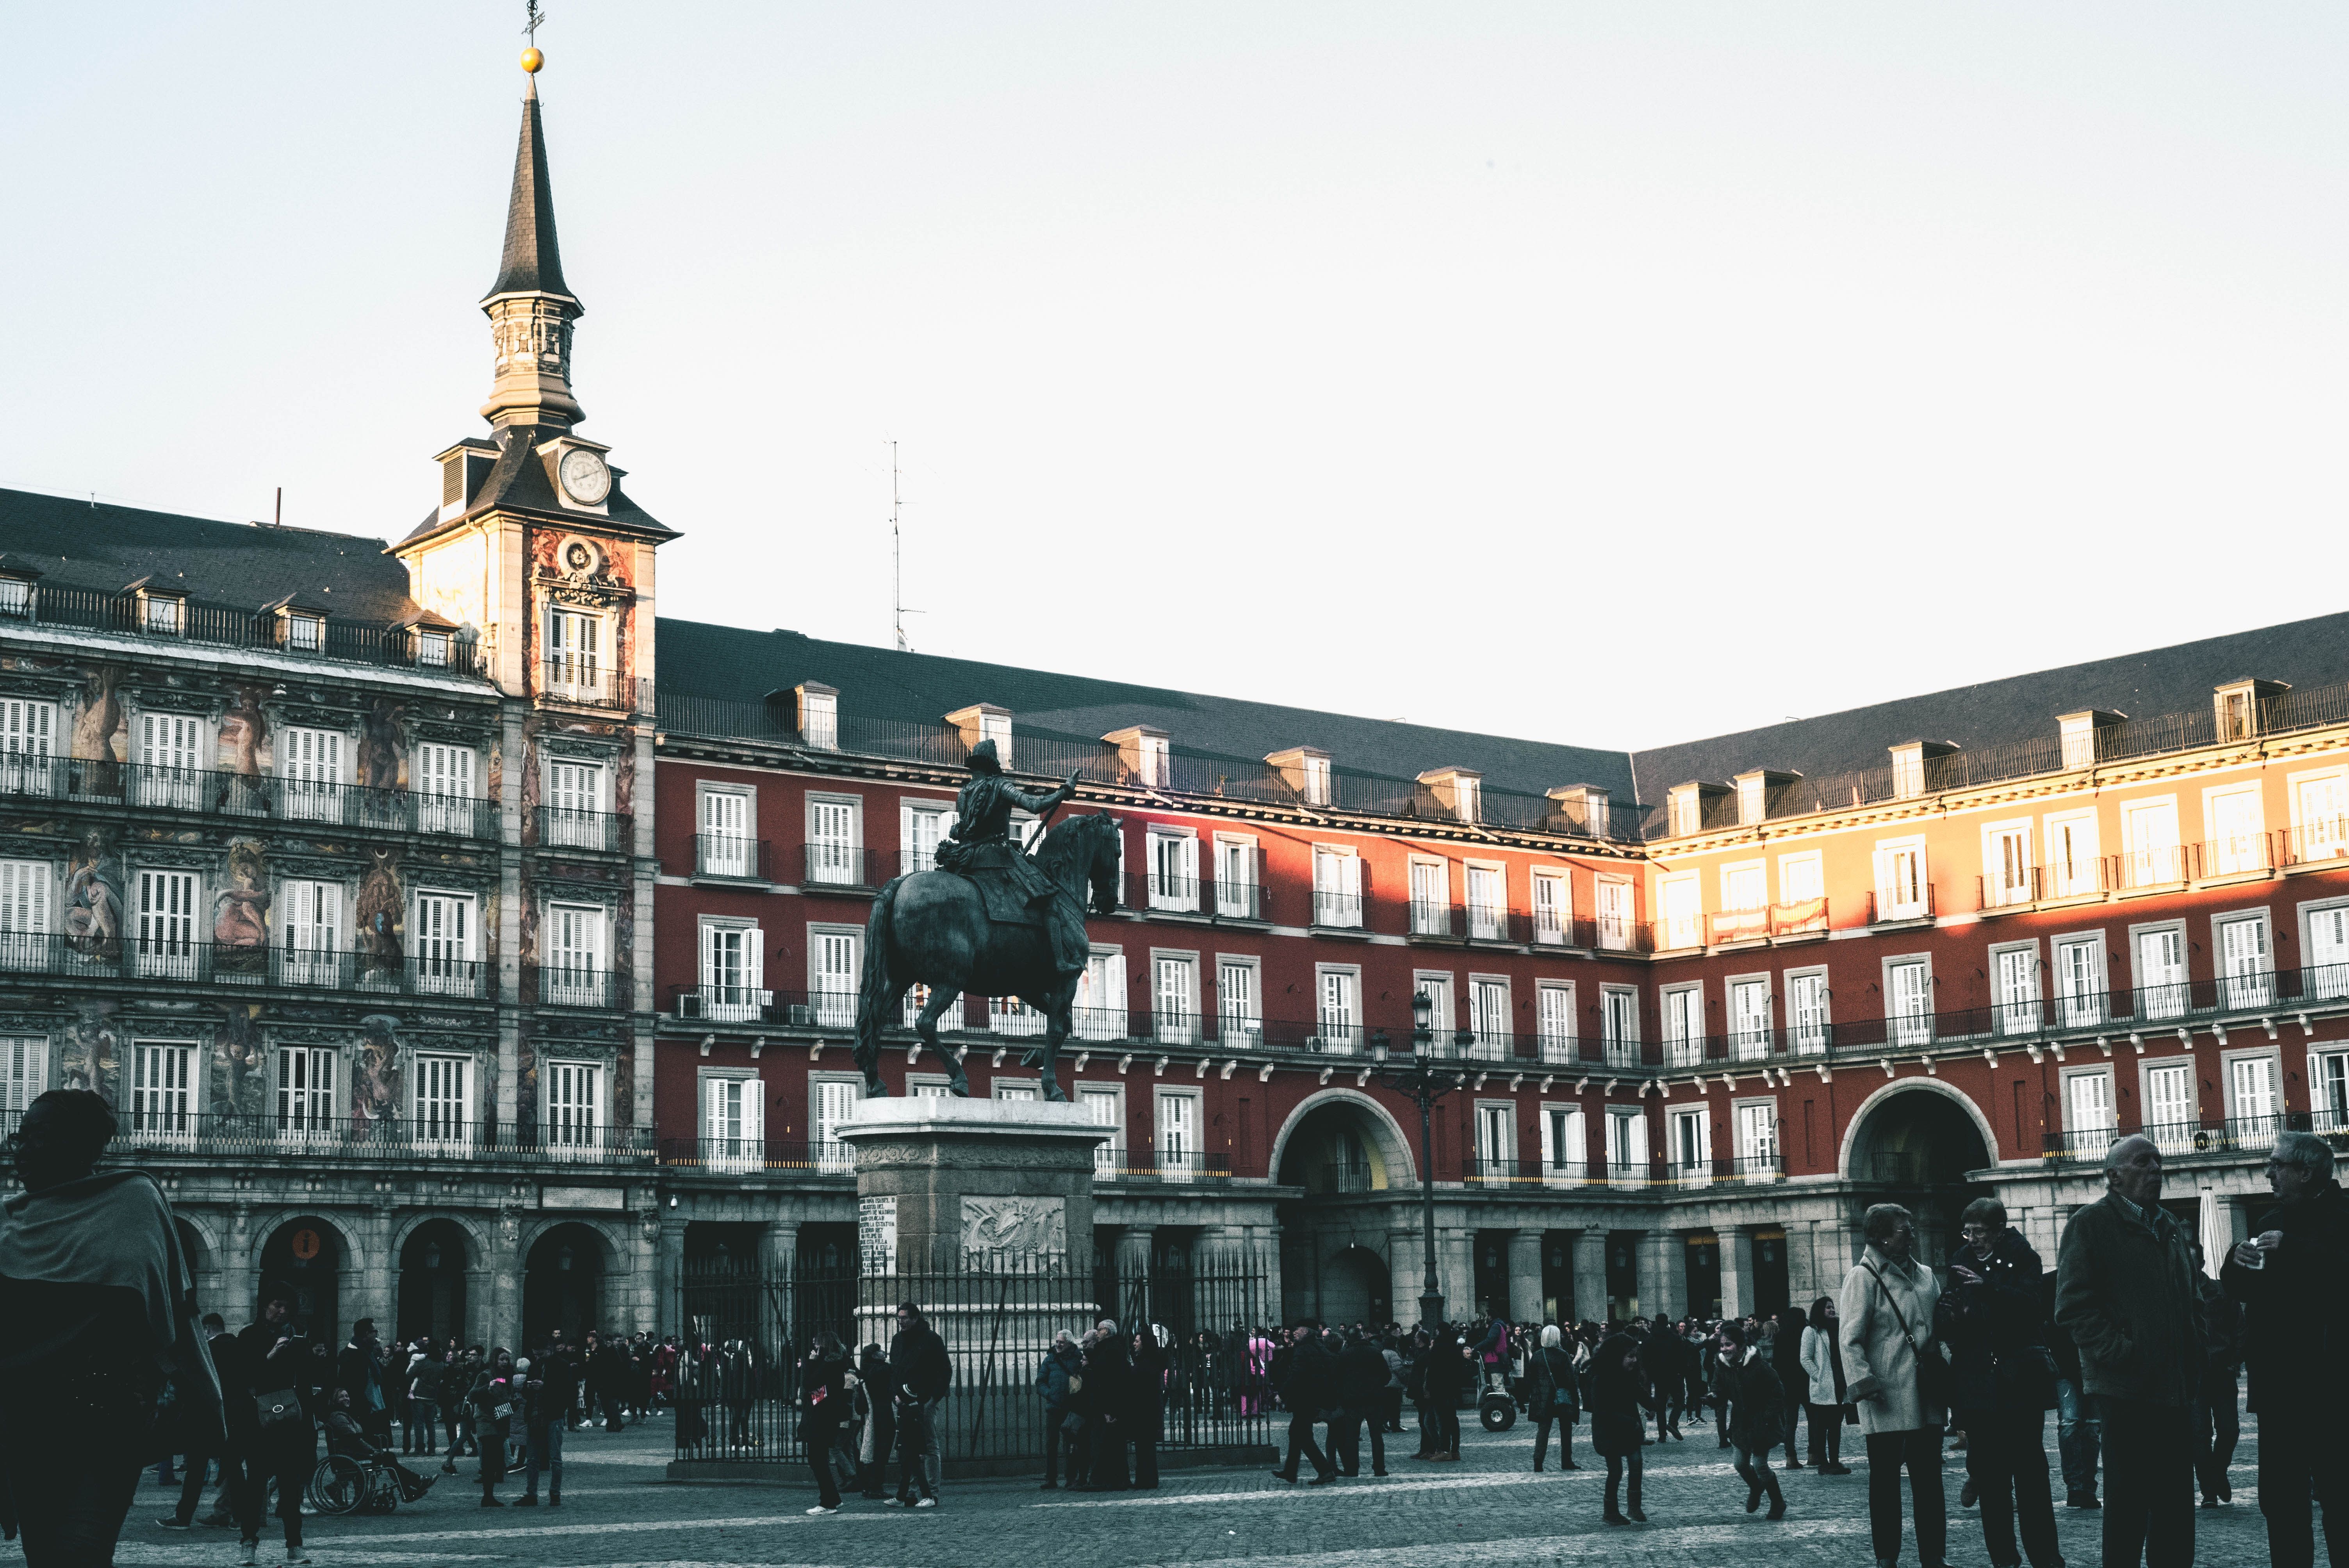 La fundación Updea organiza paseos históricos por la villa de Madrid.